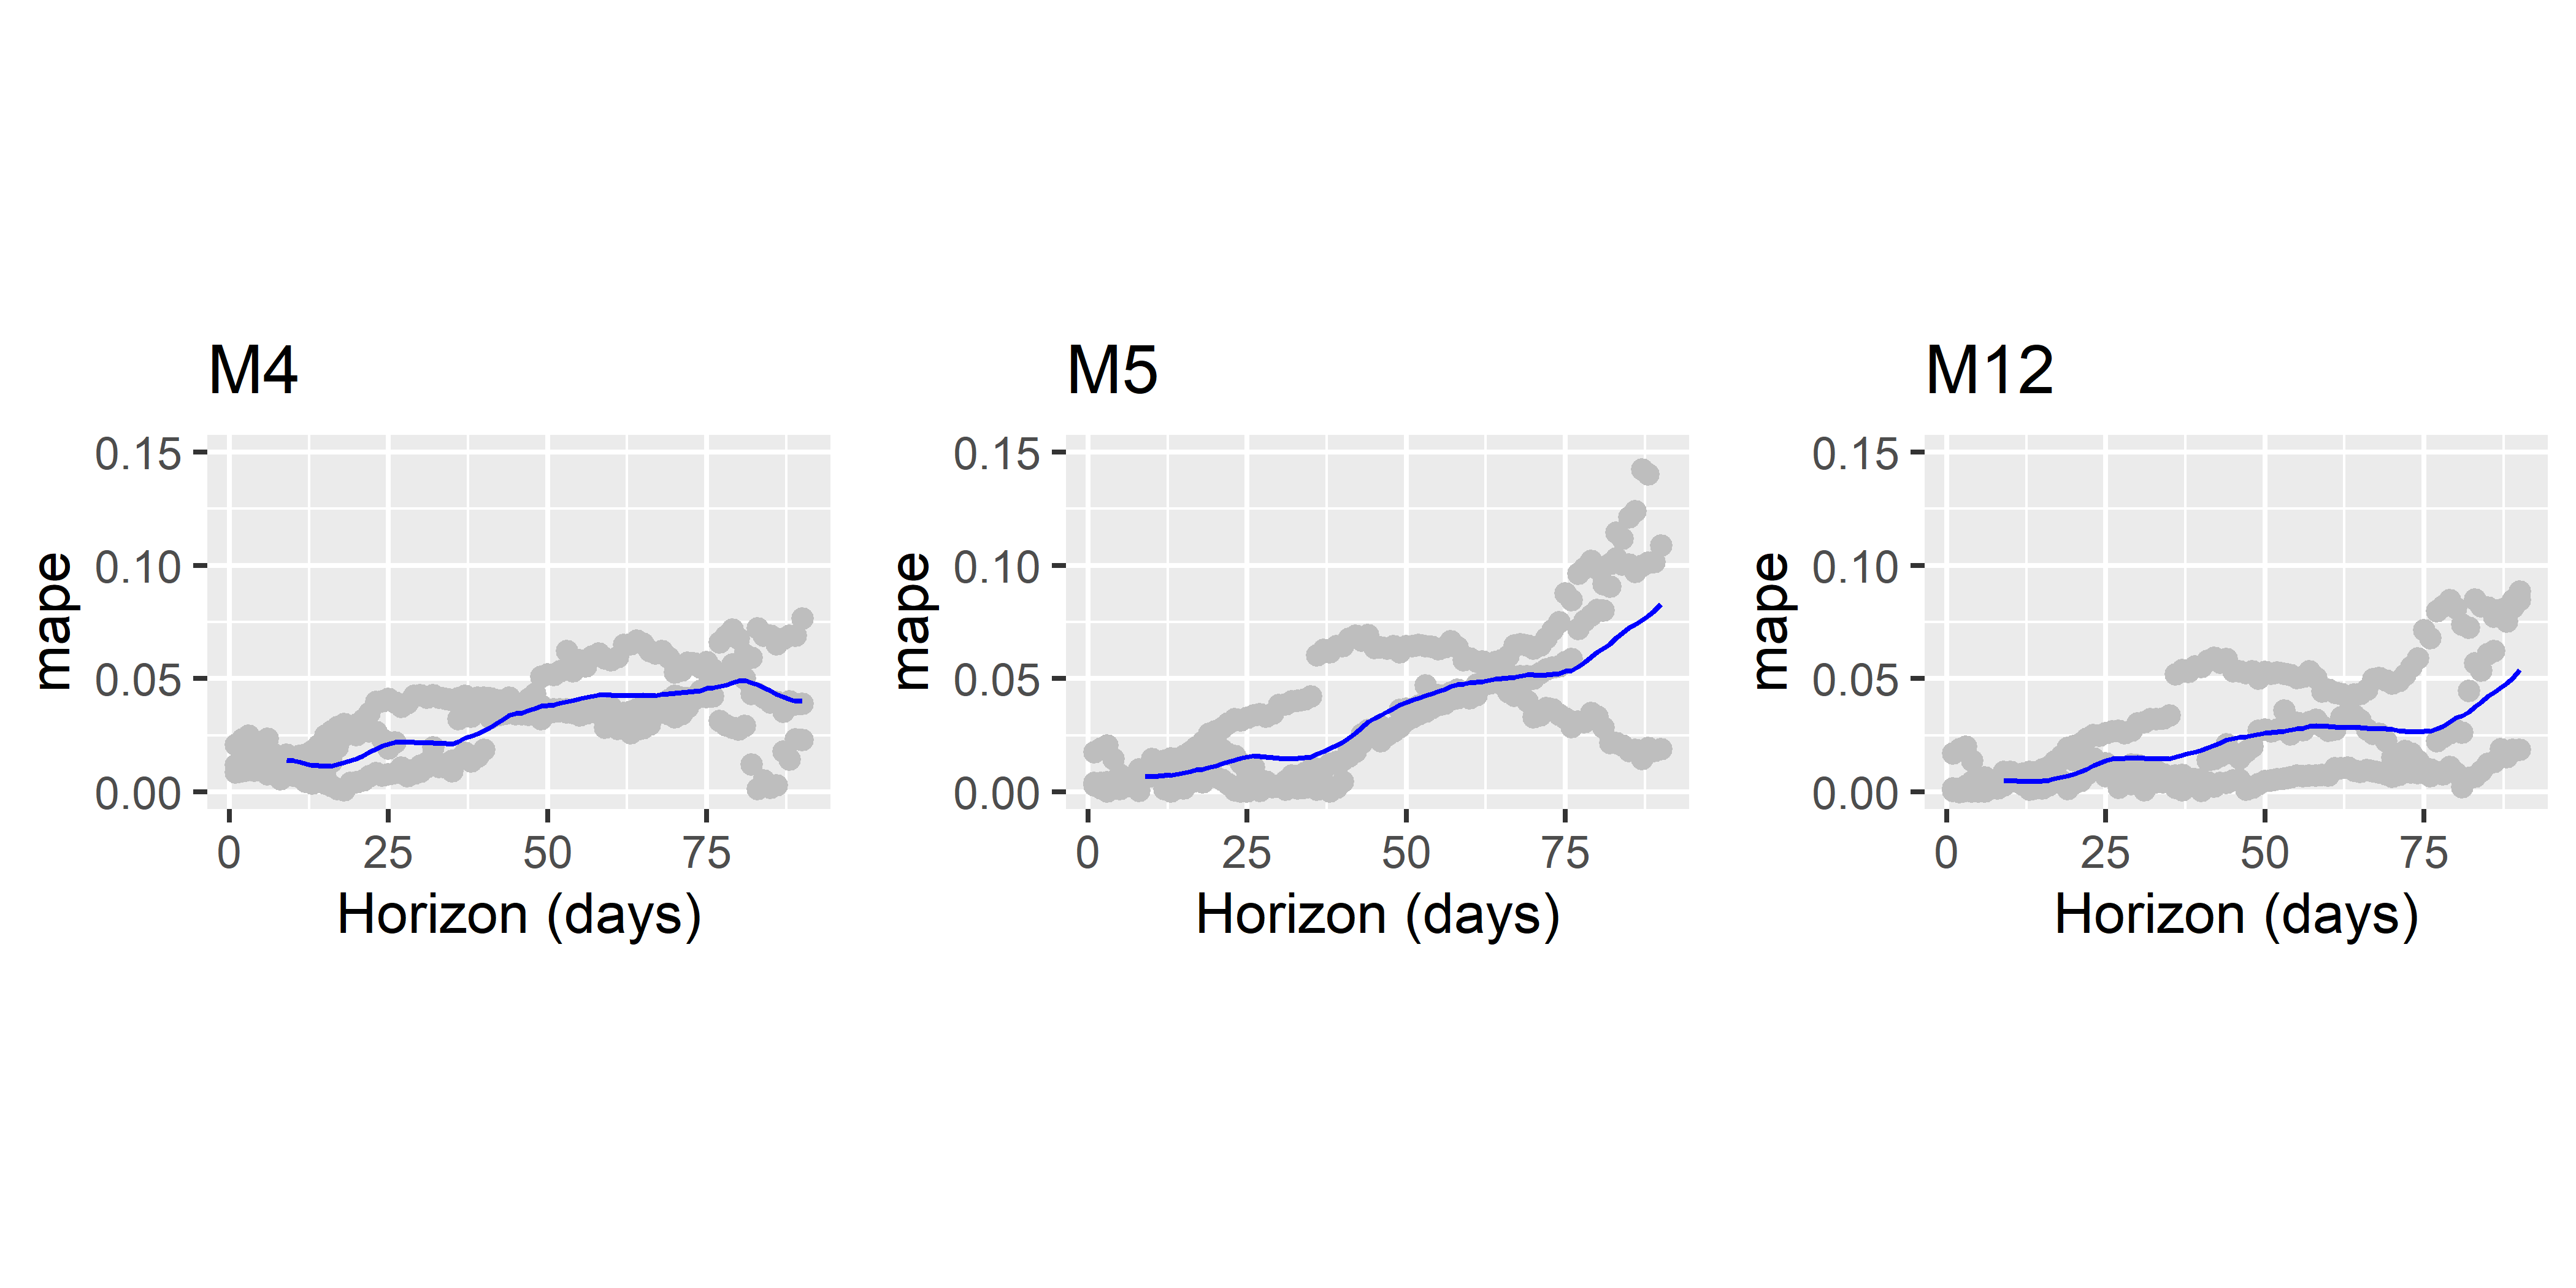 Сравнение качества предсказаний трех моделей по метрике MAPE